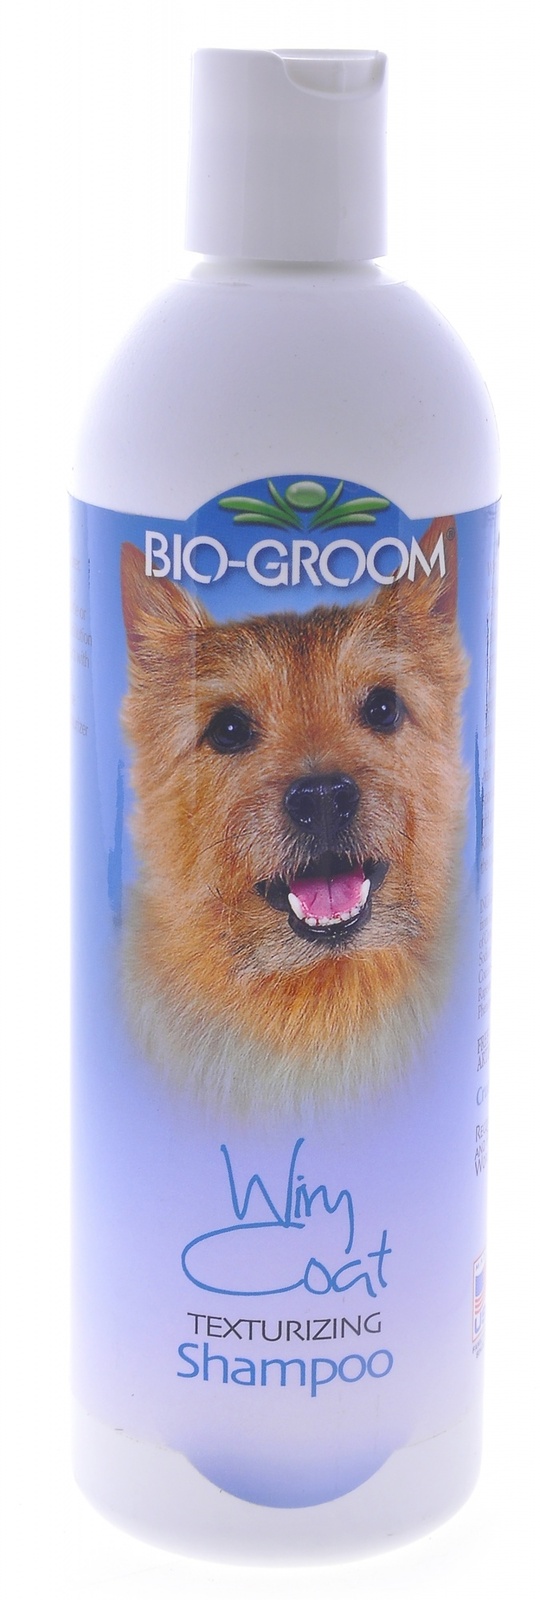 Biogroom Biogroom шампунь для жесткой шерсти, концентрат 1:4, 1.8 литра готового шампуня (355 г) biogroom biogroom кондиционер шелковый концентрат 1 4 silk conditioner 355 г